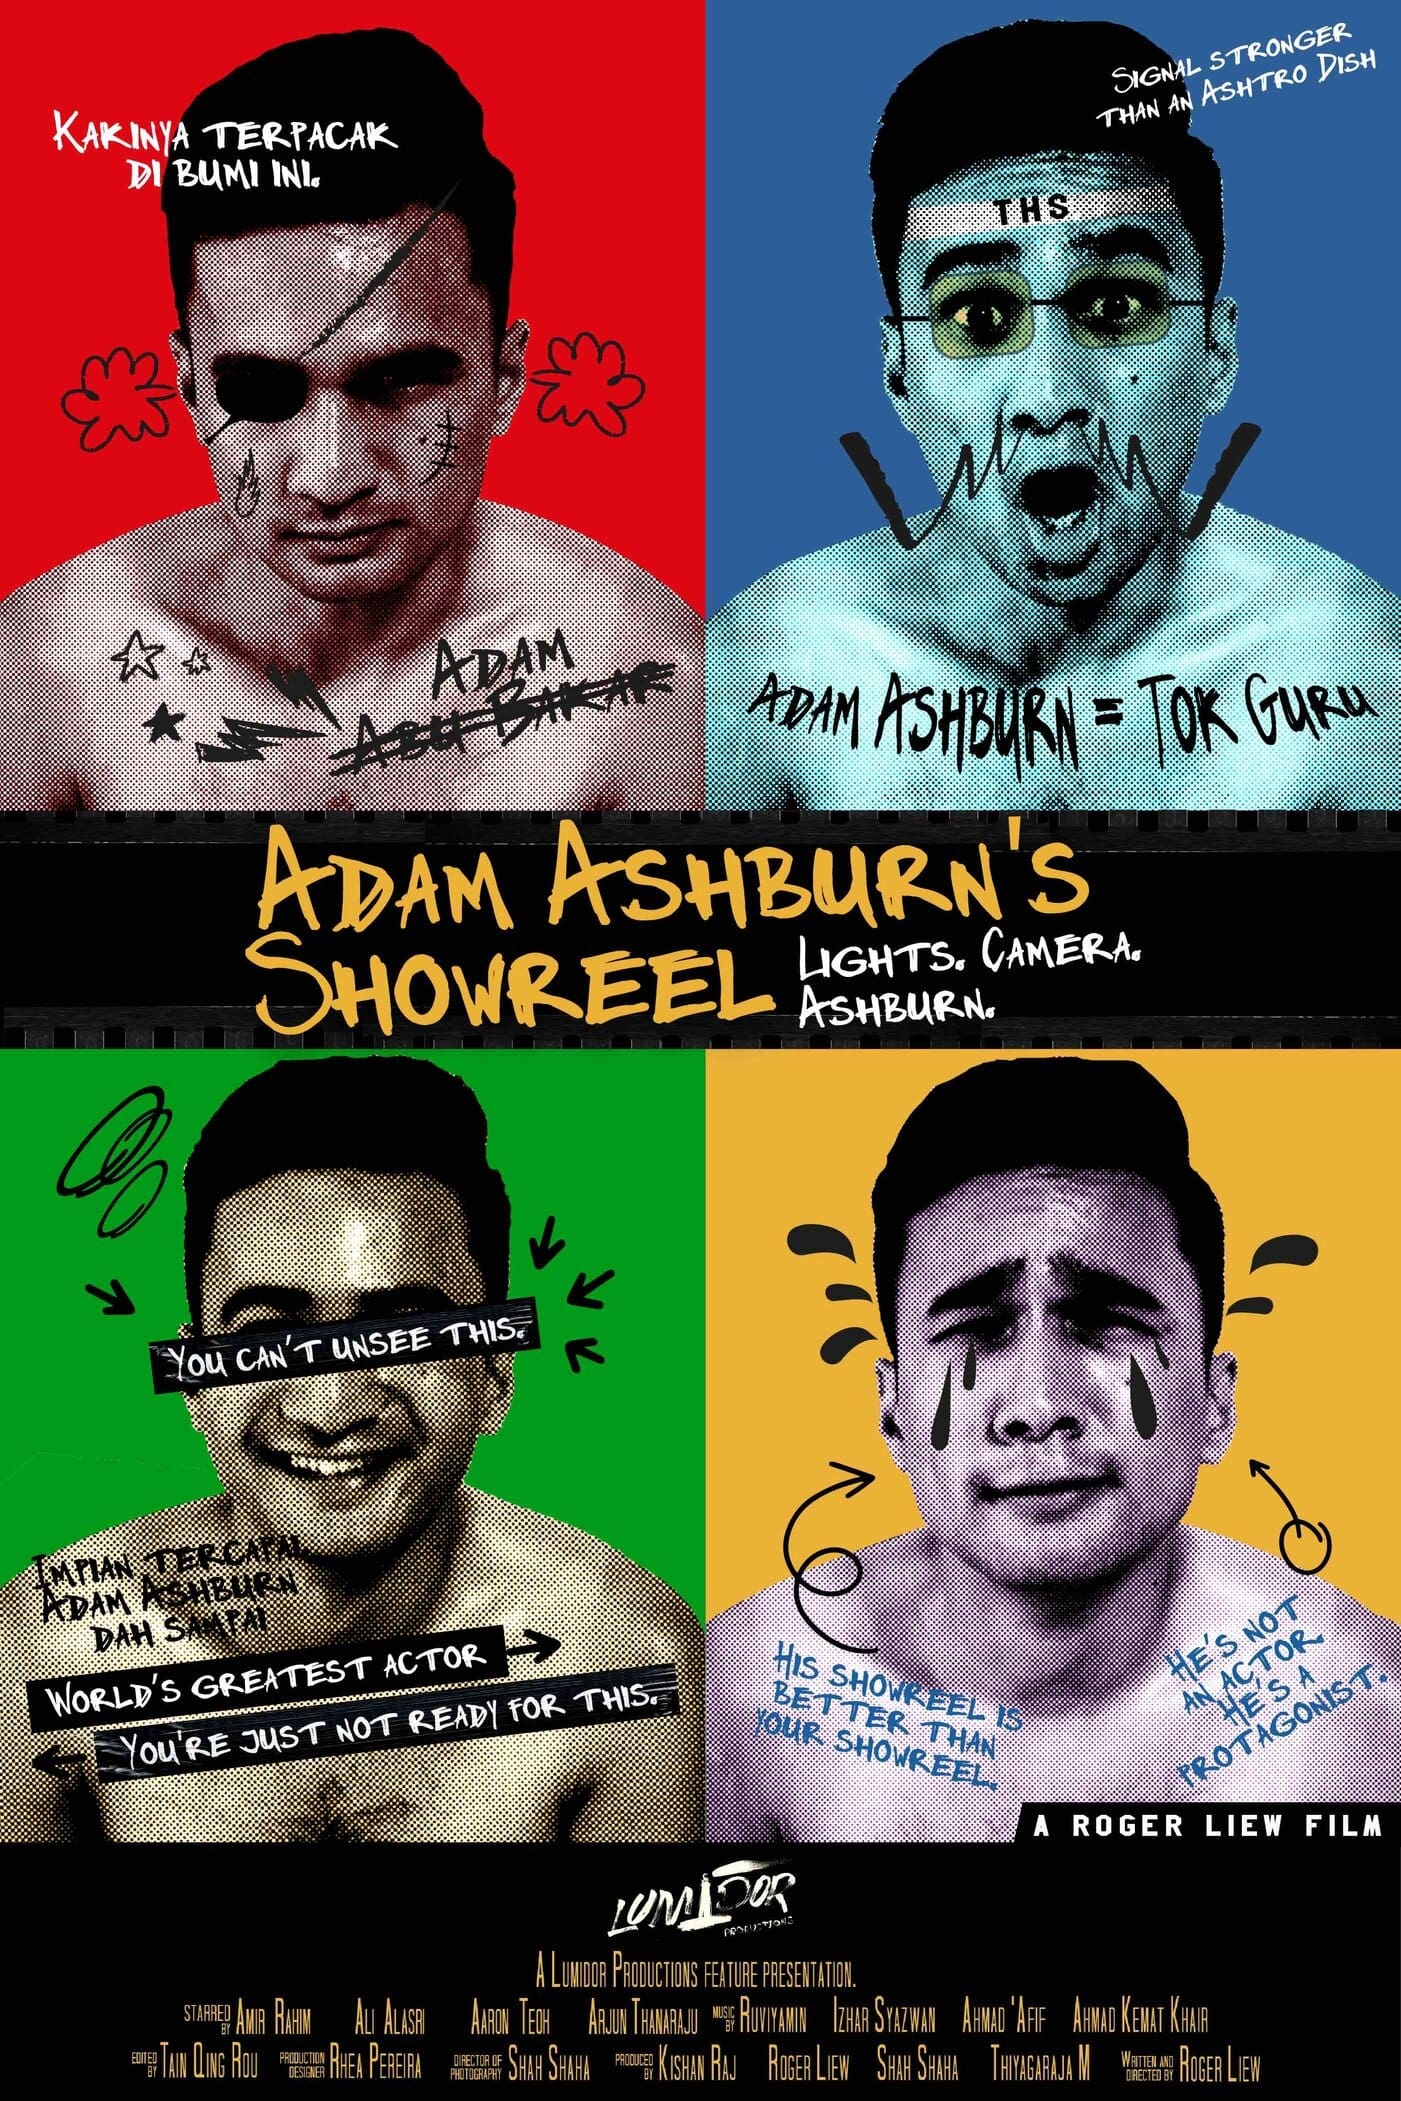 Adam Ashburn's Showreel